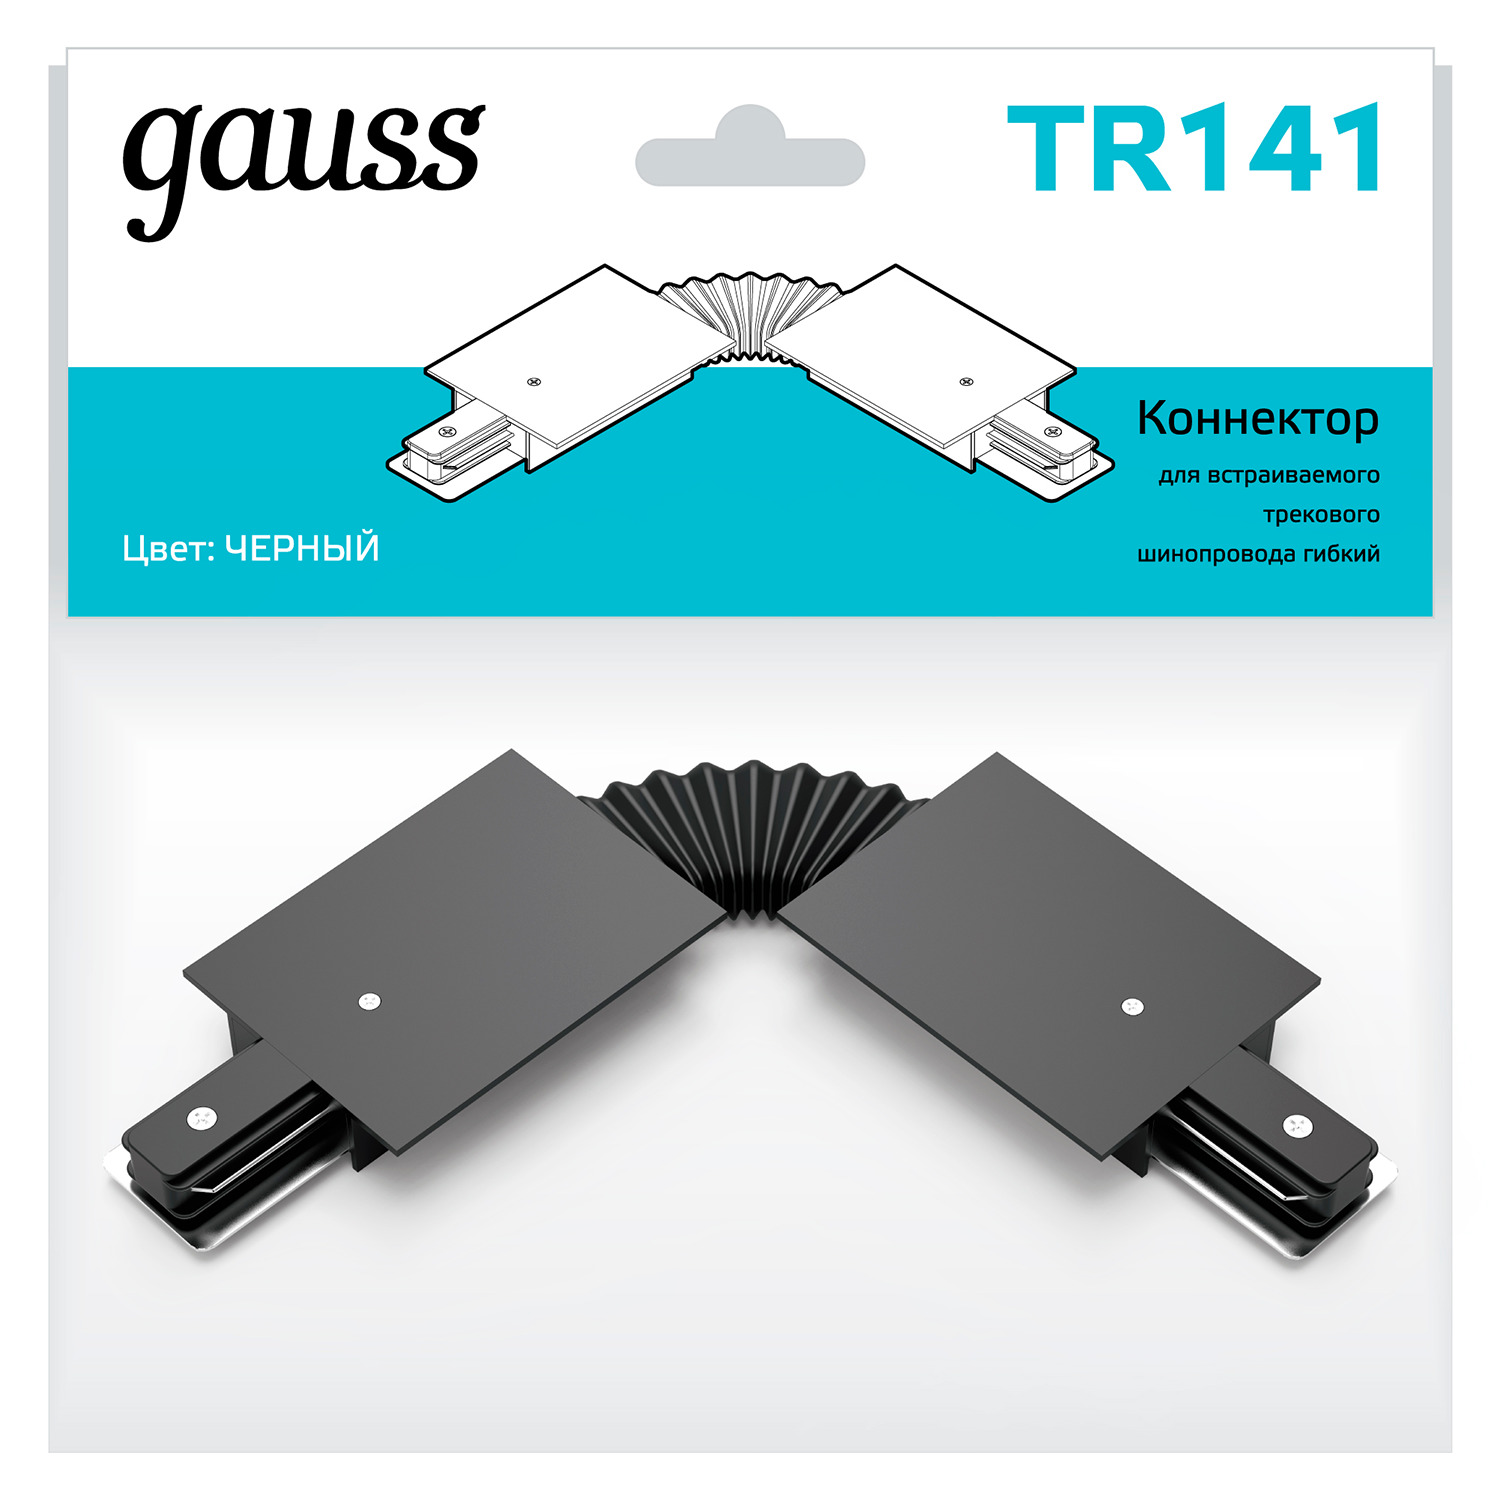 Коннектор Gauss для встраиваемых трековых шинопроводов гибкий (I) черный гибкий коннектор для встраиваемых трековых шинопроводов gauss